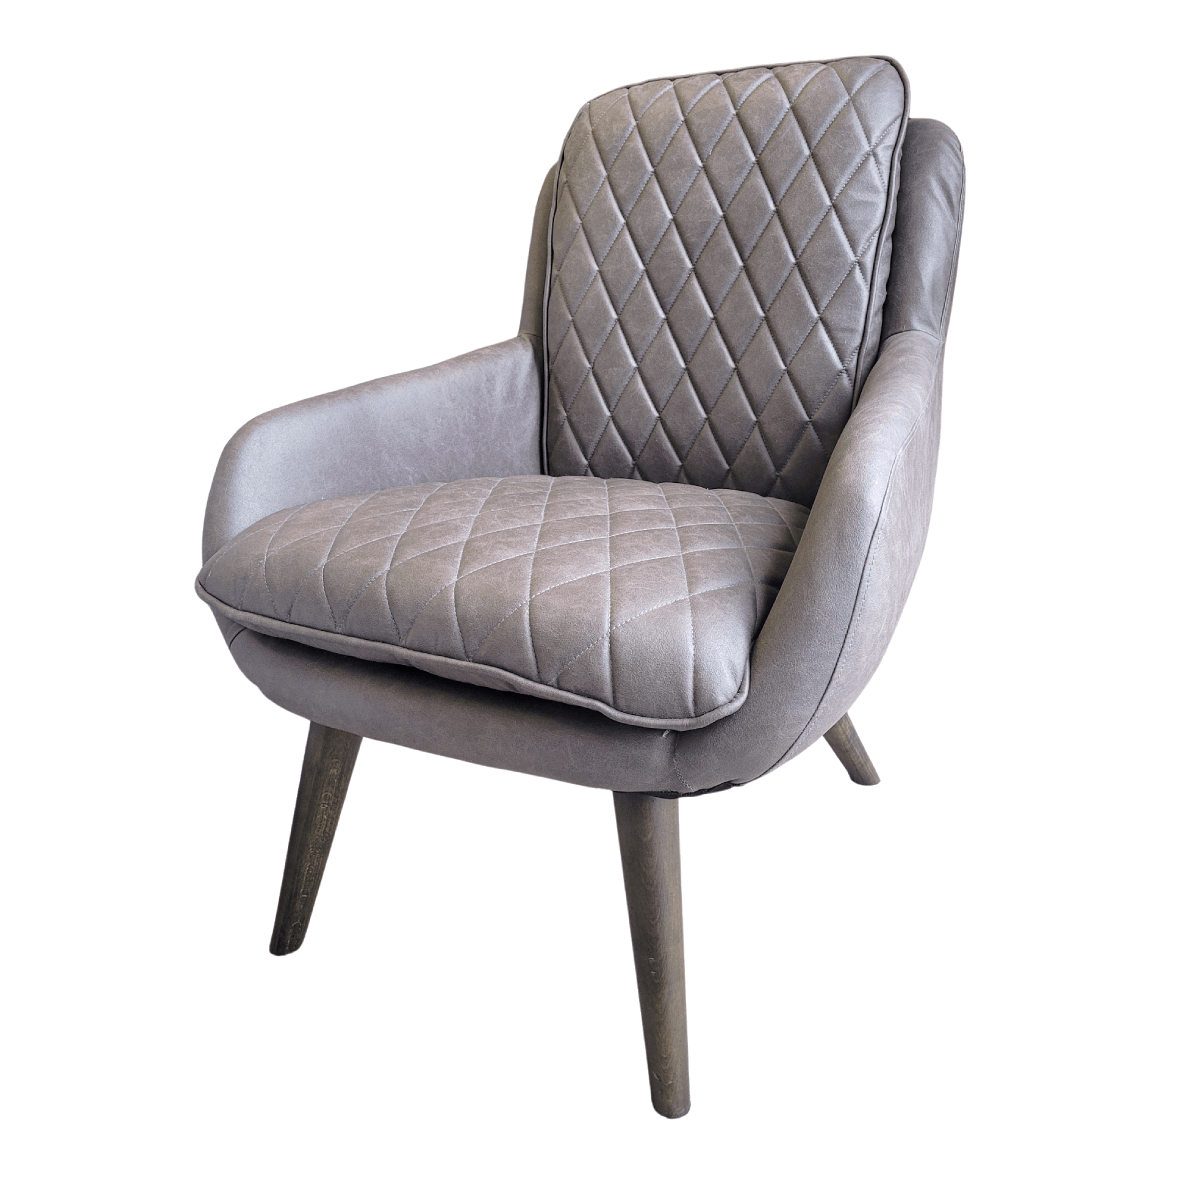 Grey Diamond Stitch Chair